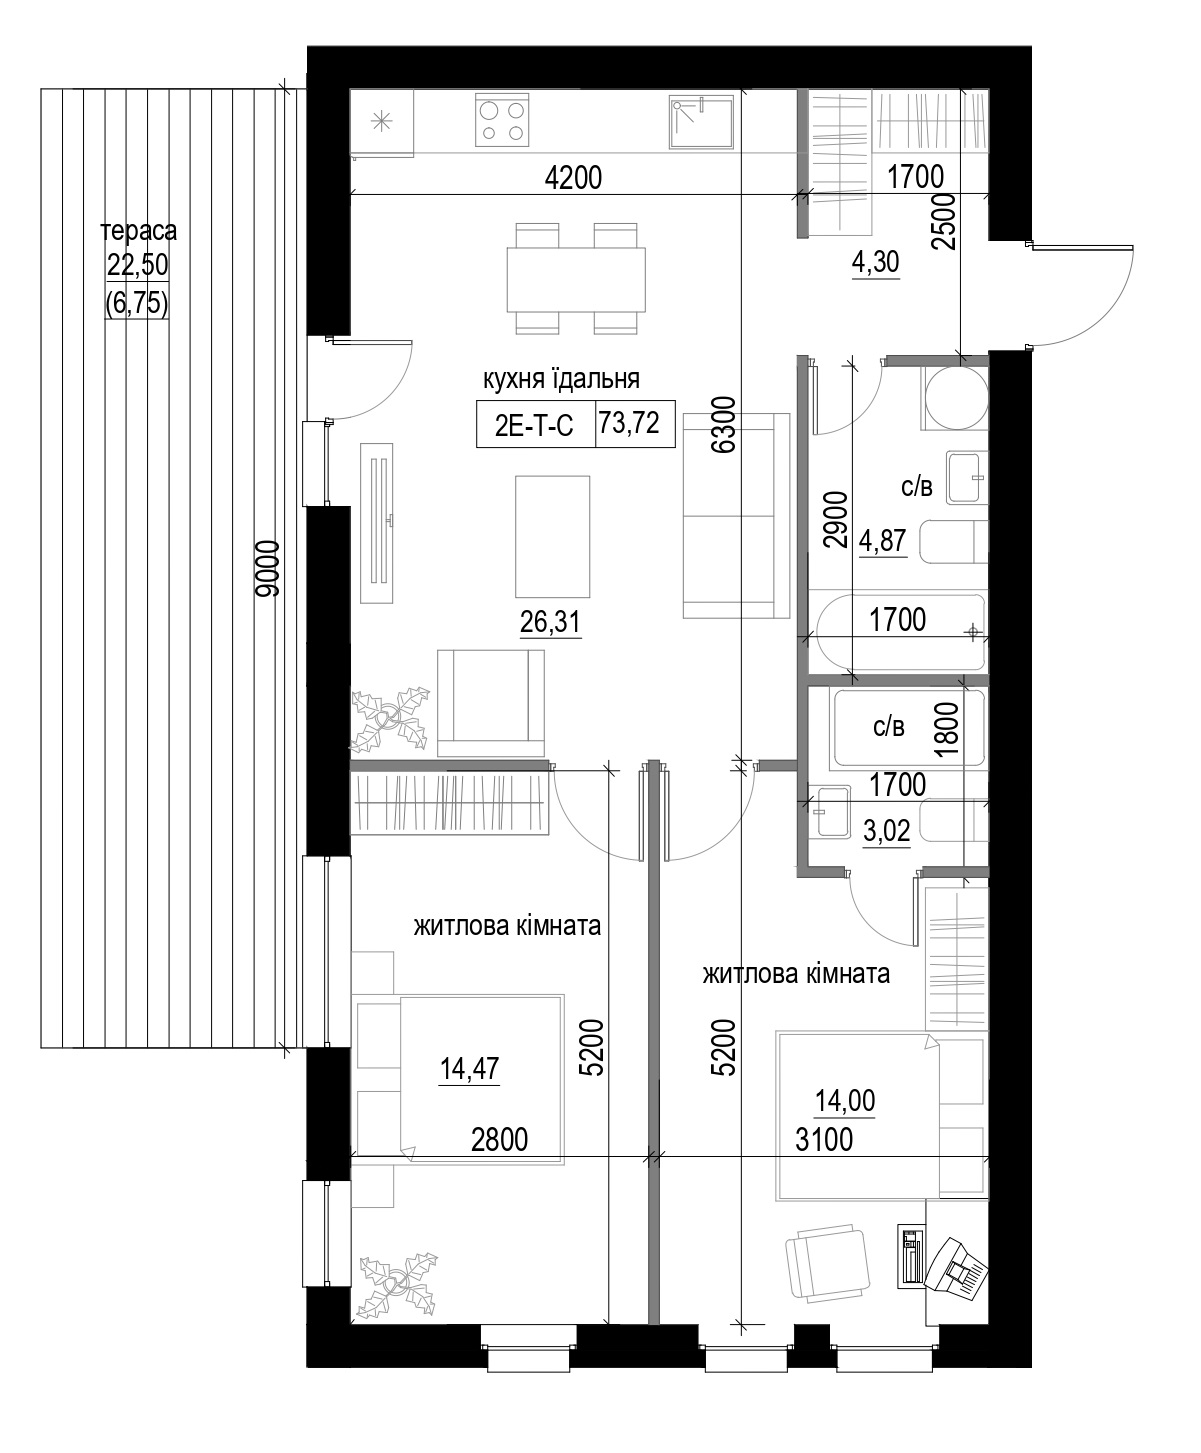 Планування 2-к квартира площею 73.72м2, LR-004-01/0004.